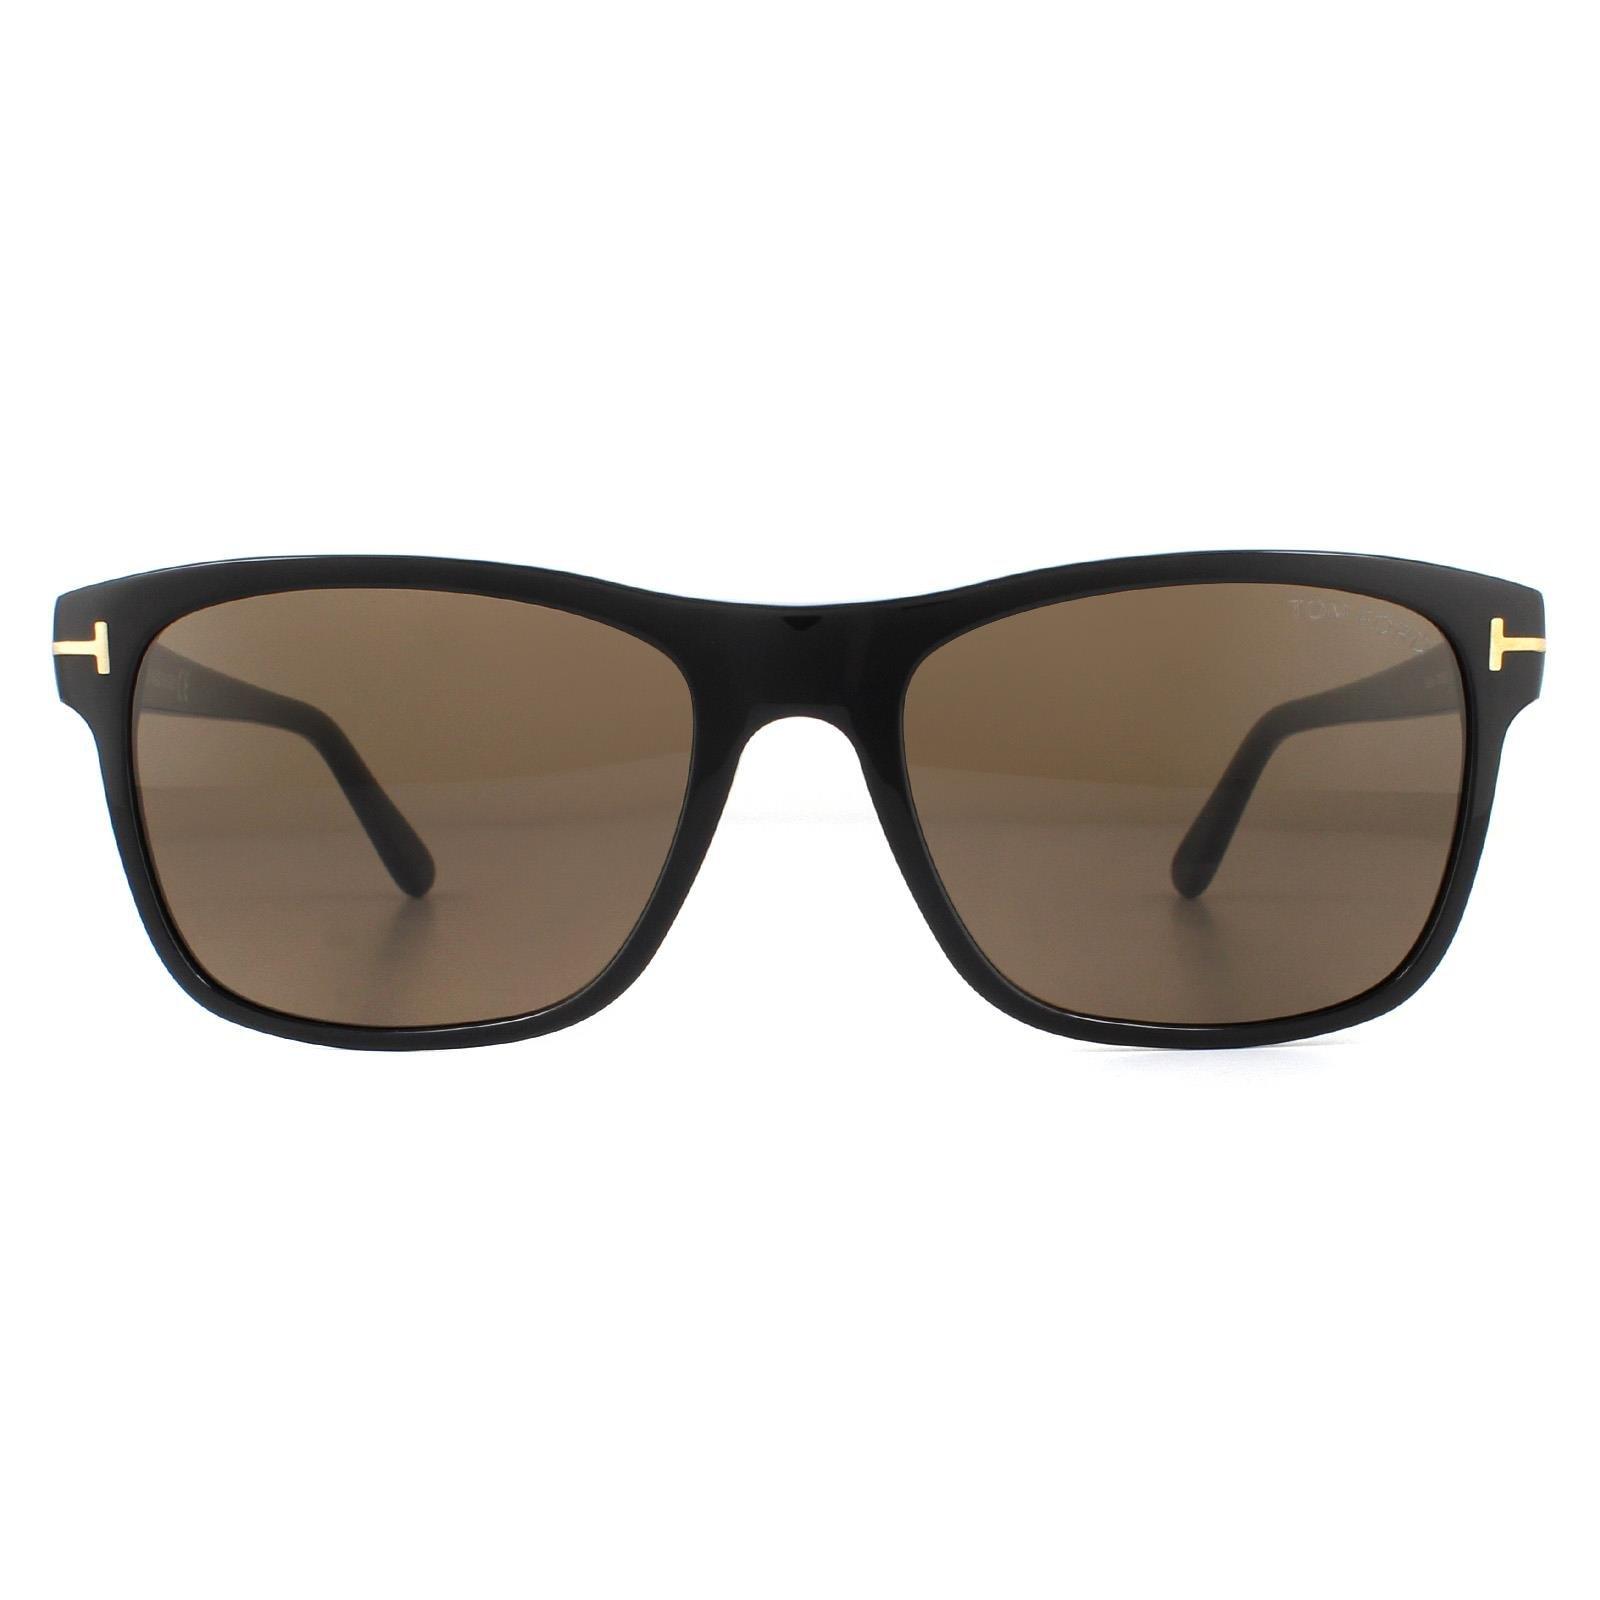 Прямоугольные блестящие черные солнцезащитные очки Roviex Tom Ford, черный фотографии